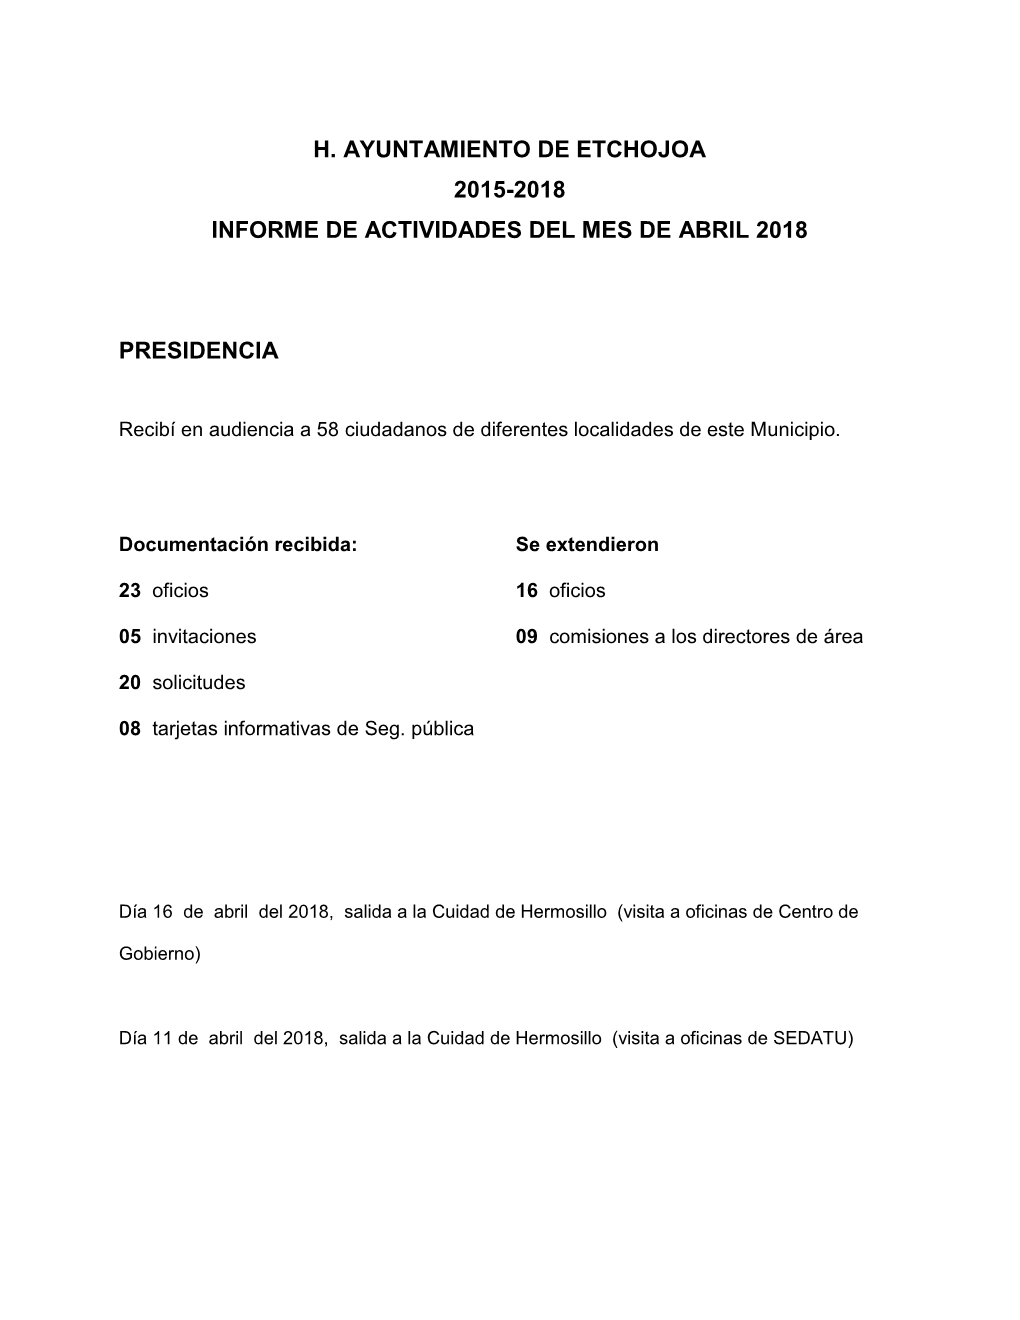 H. Ayuntamiento De Etchojoa 2015-2018 Informe De Actividades Del Mes De Abril 2018